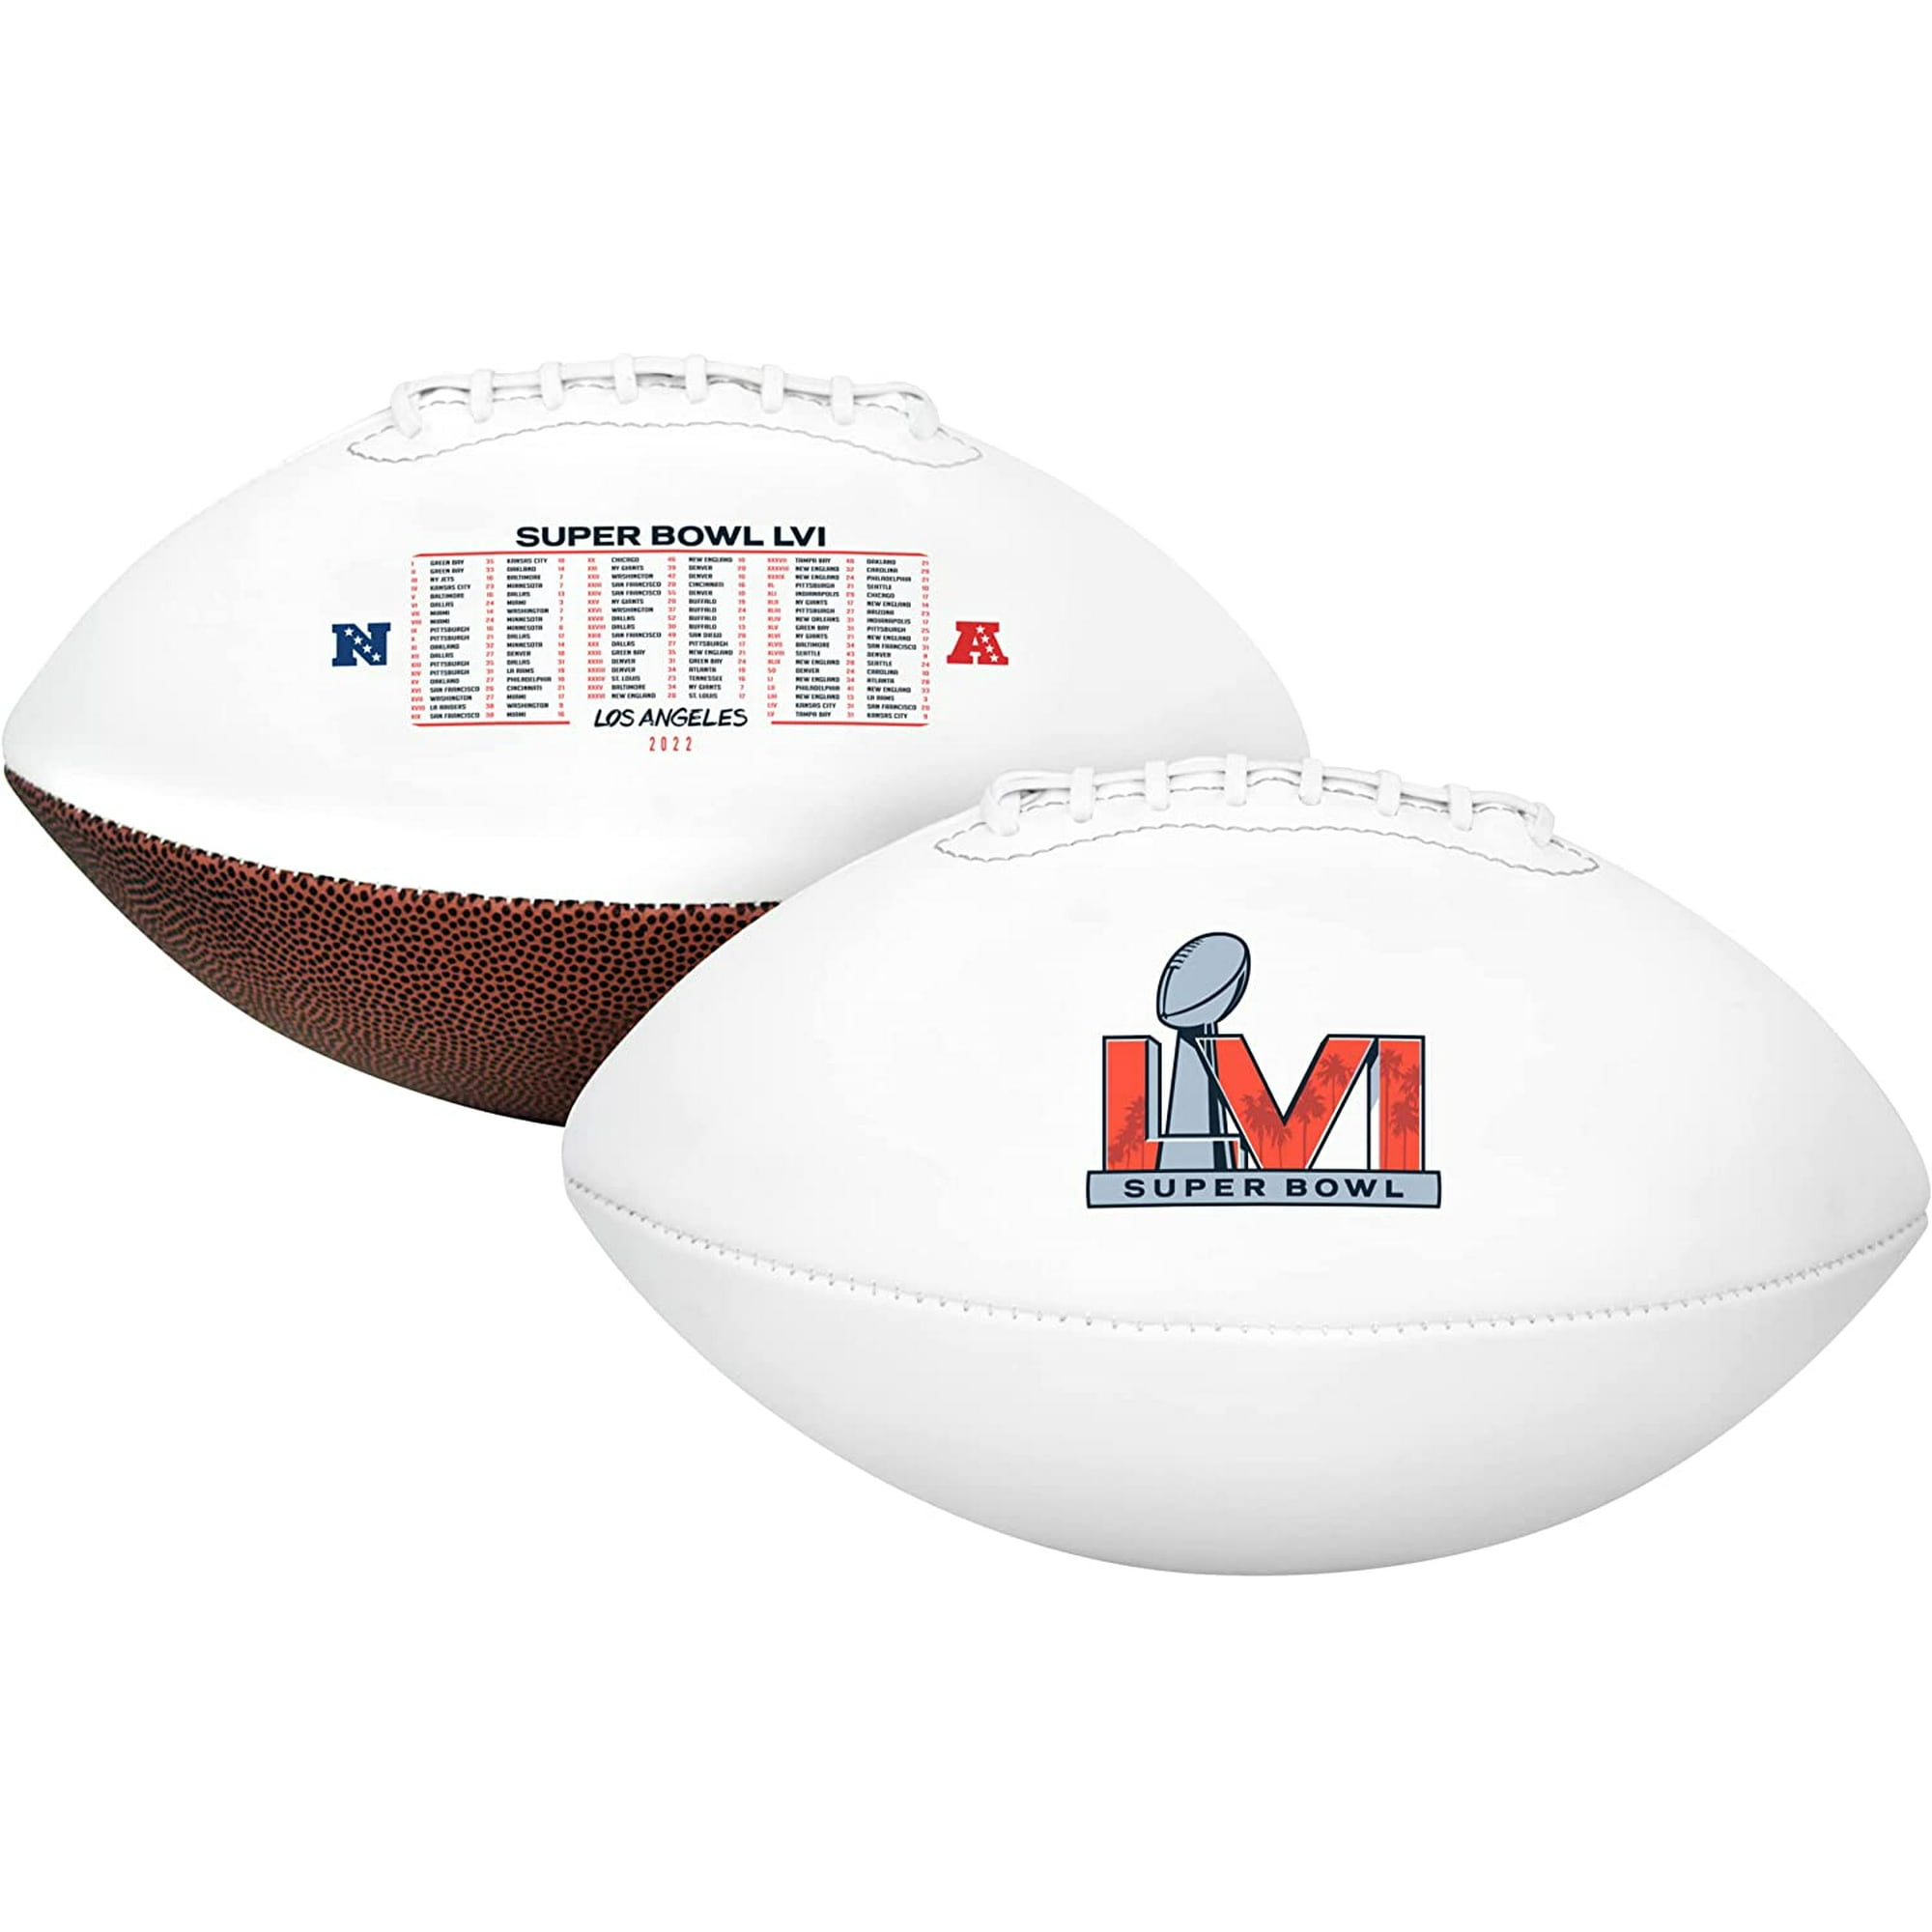 Super Bowl LVI (Los Angeles 2022) Official NFL Football